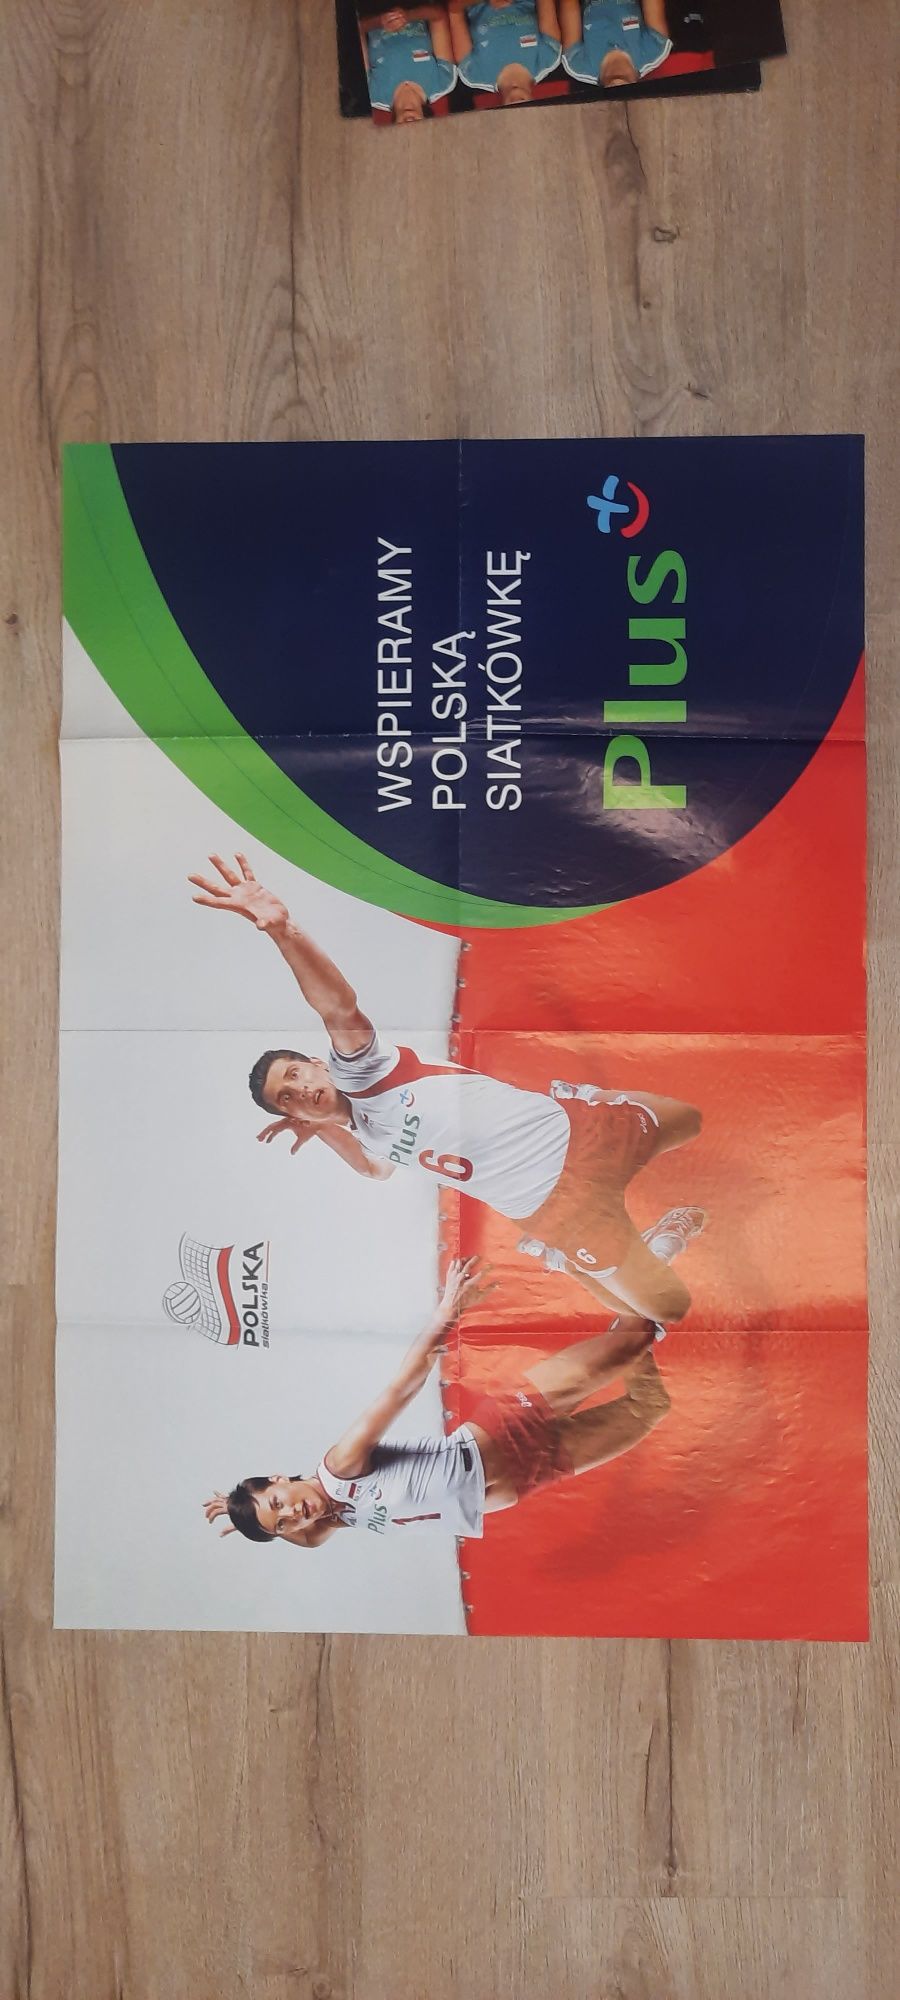 Plakaty polskiej reprezentacji siatkówki